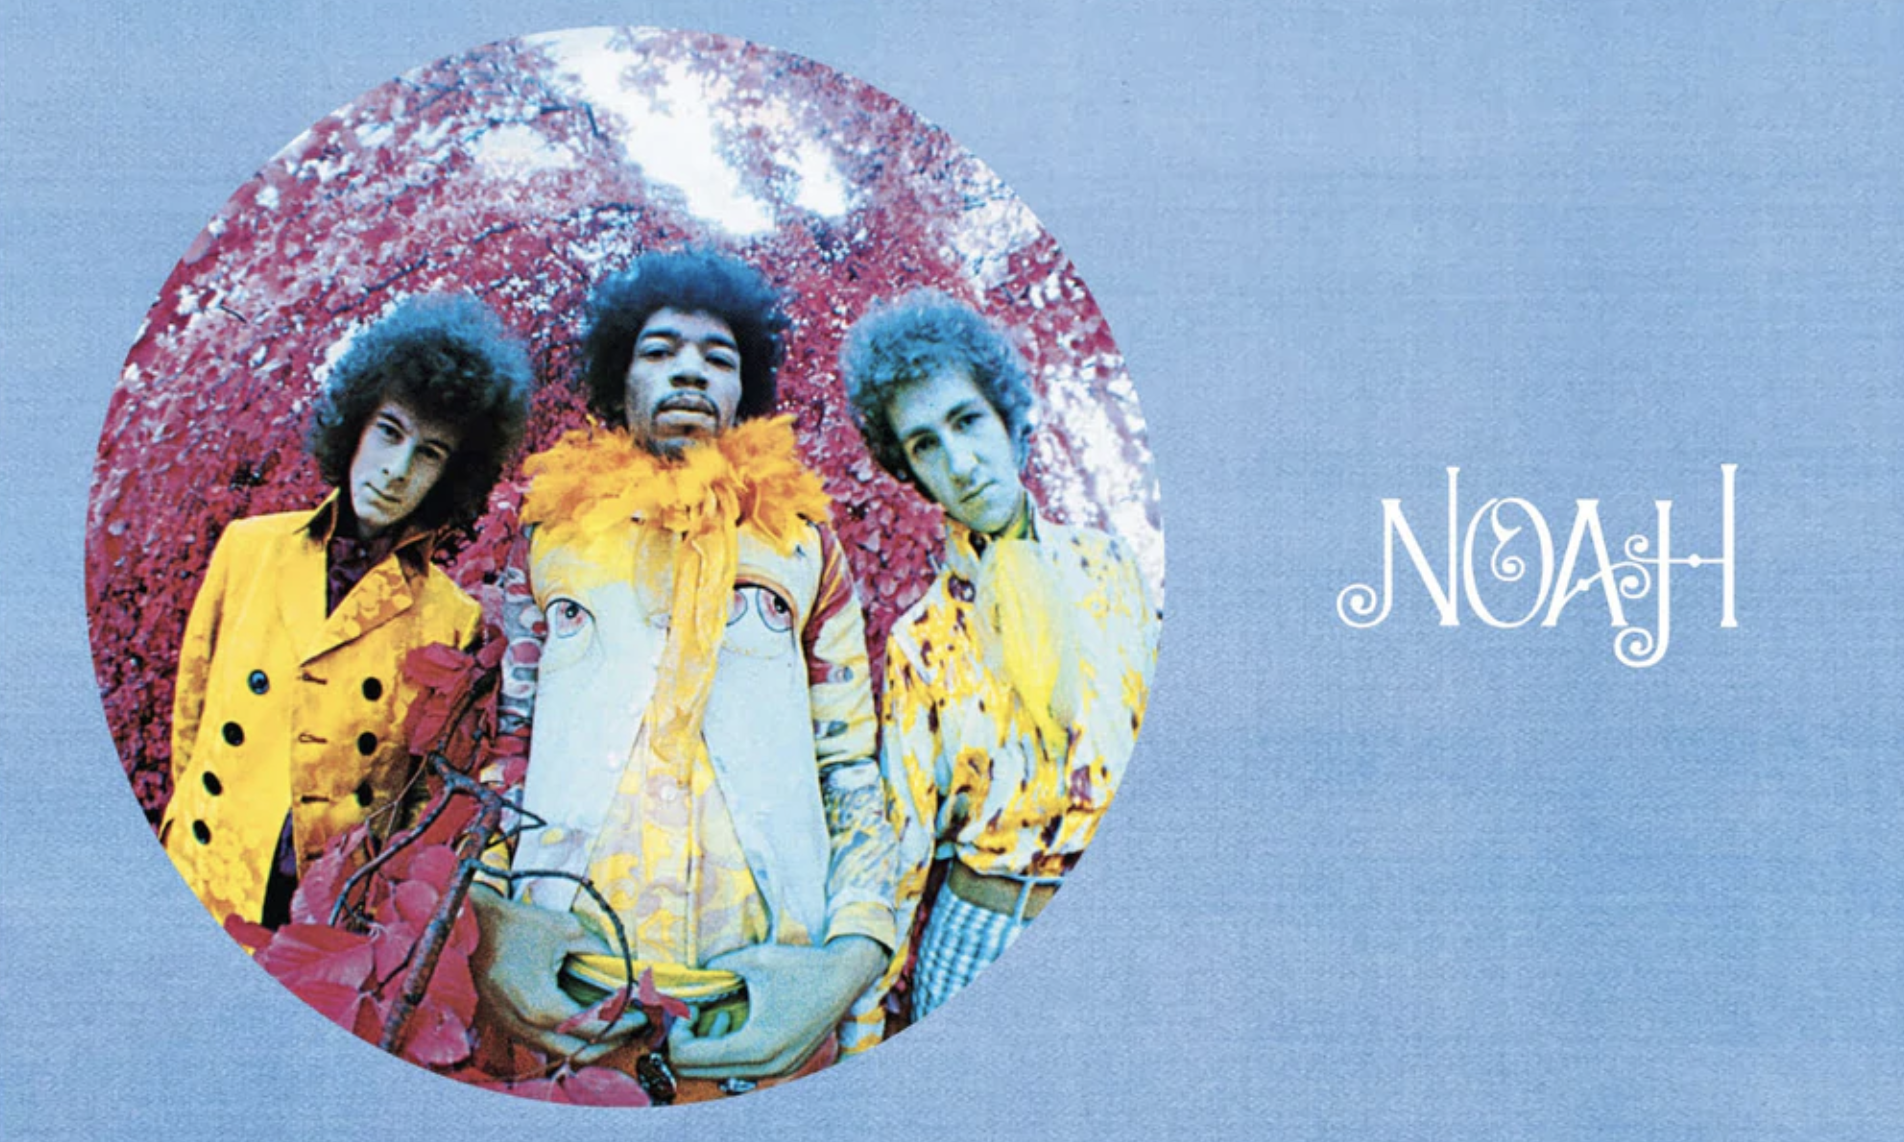 NOAH x Jimi Hendrix 将推出全新胶囊系列